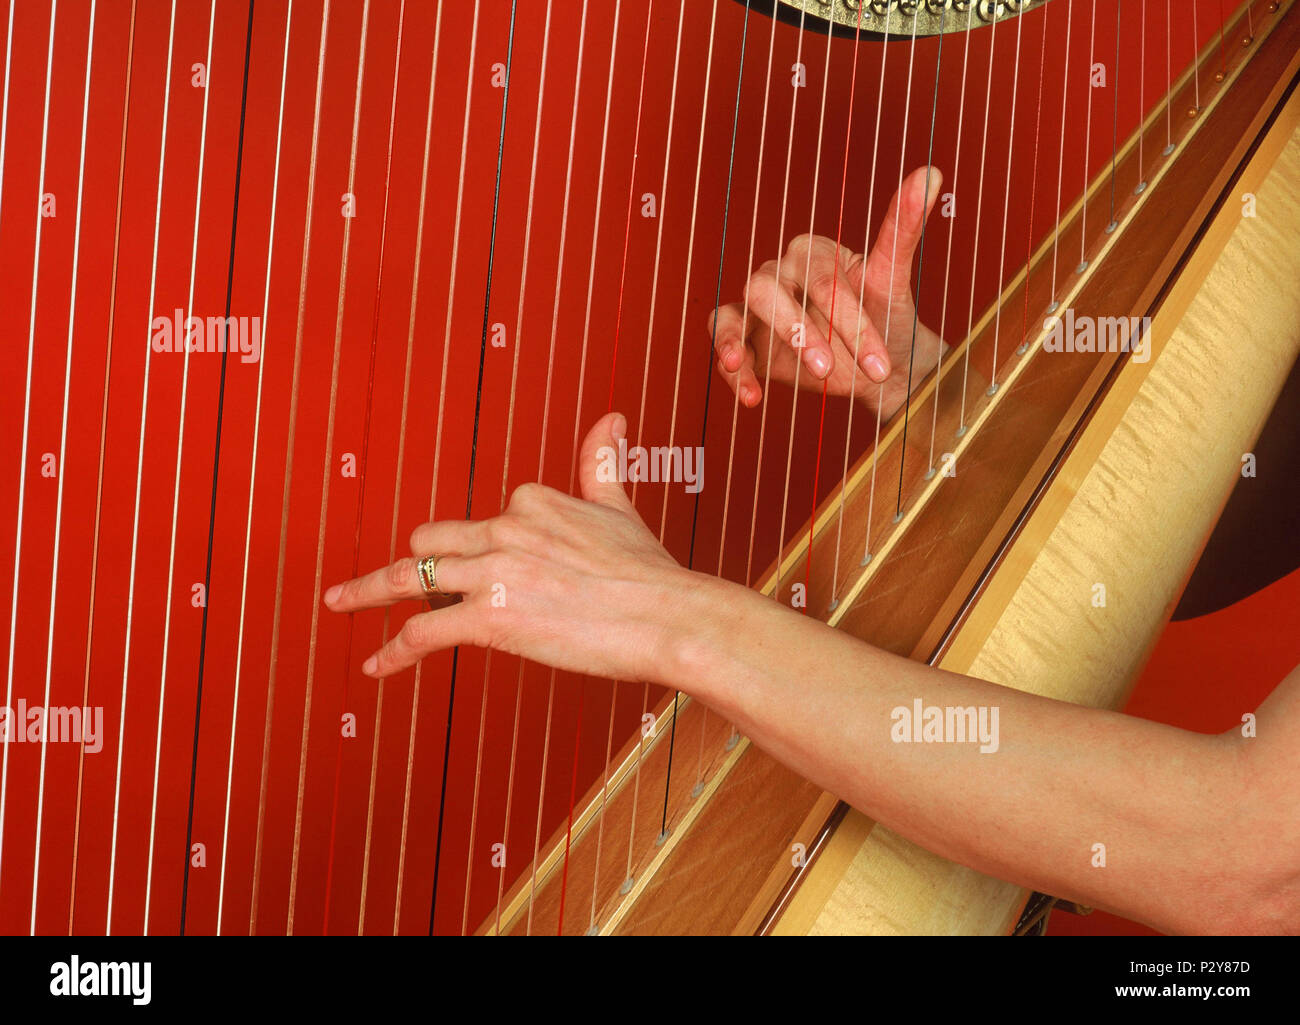 Harfenspieler spielt eine konzertharfe von Obermeyer. Stockfoto